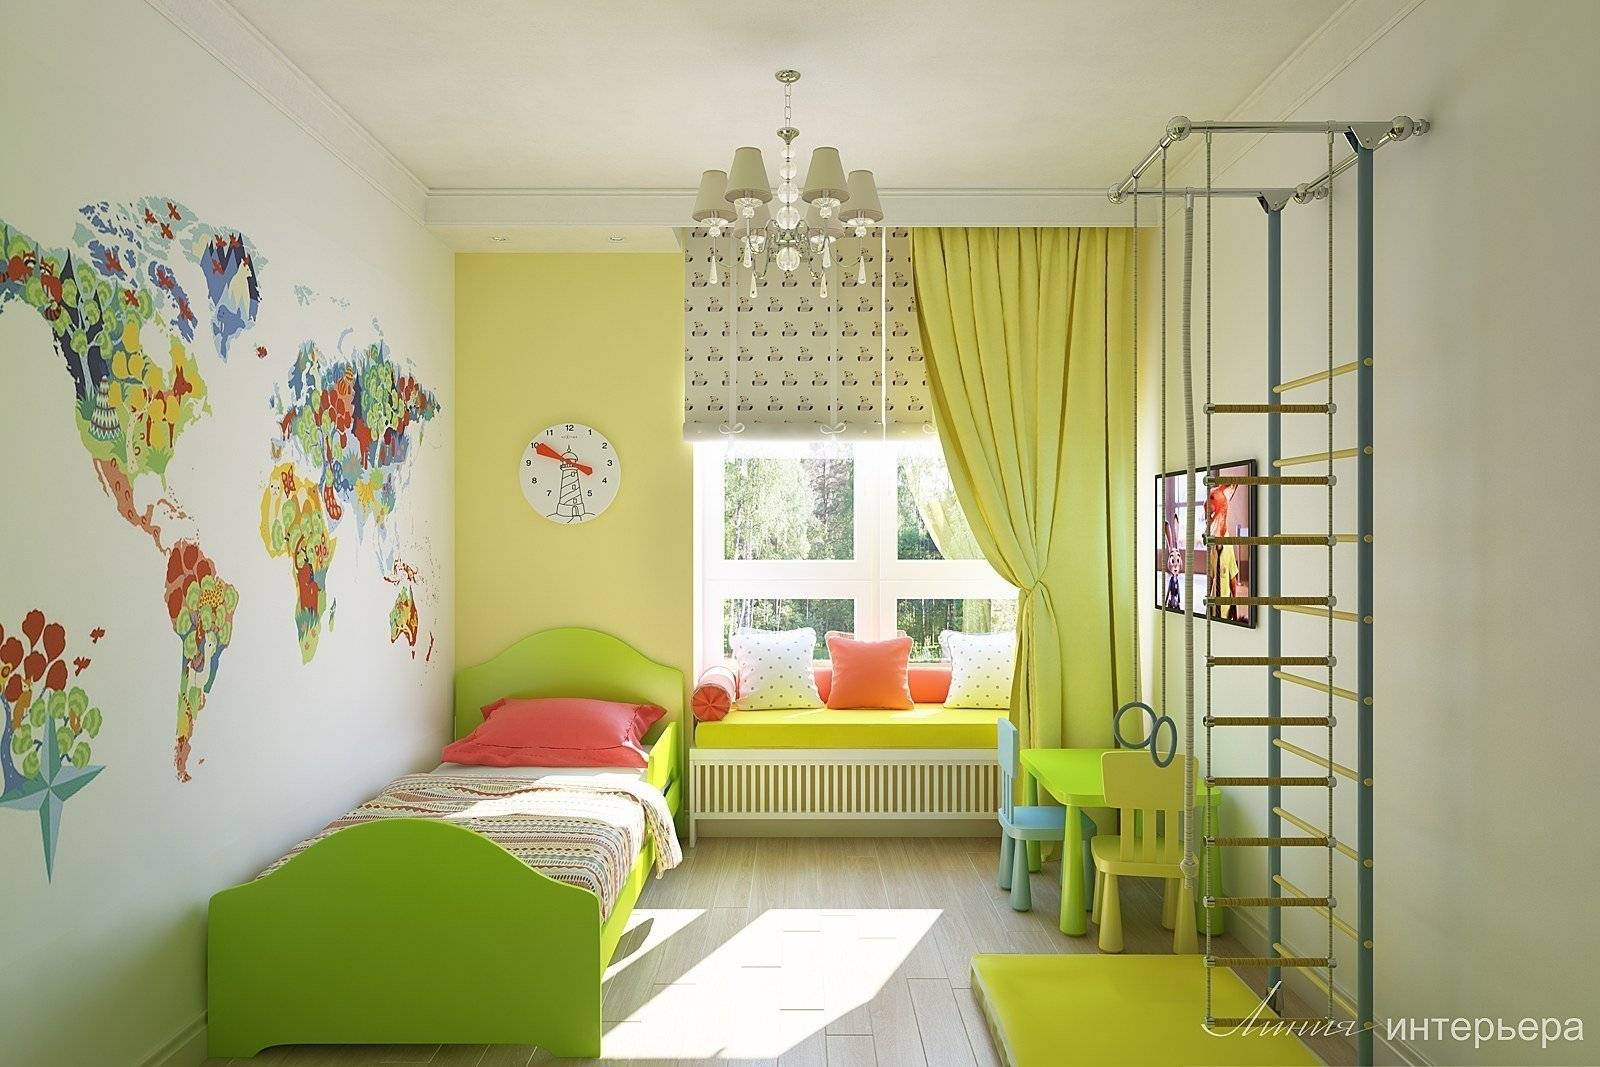 Дизайн детской комнаты: фото идеи интерьера для разного возраста